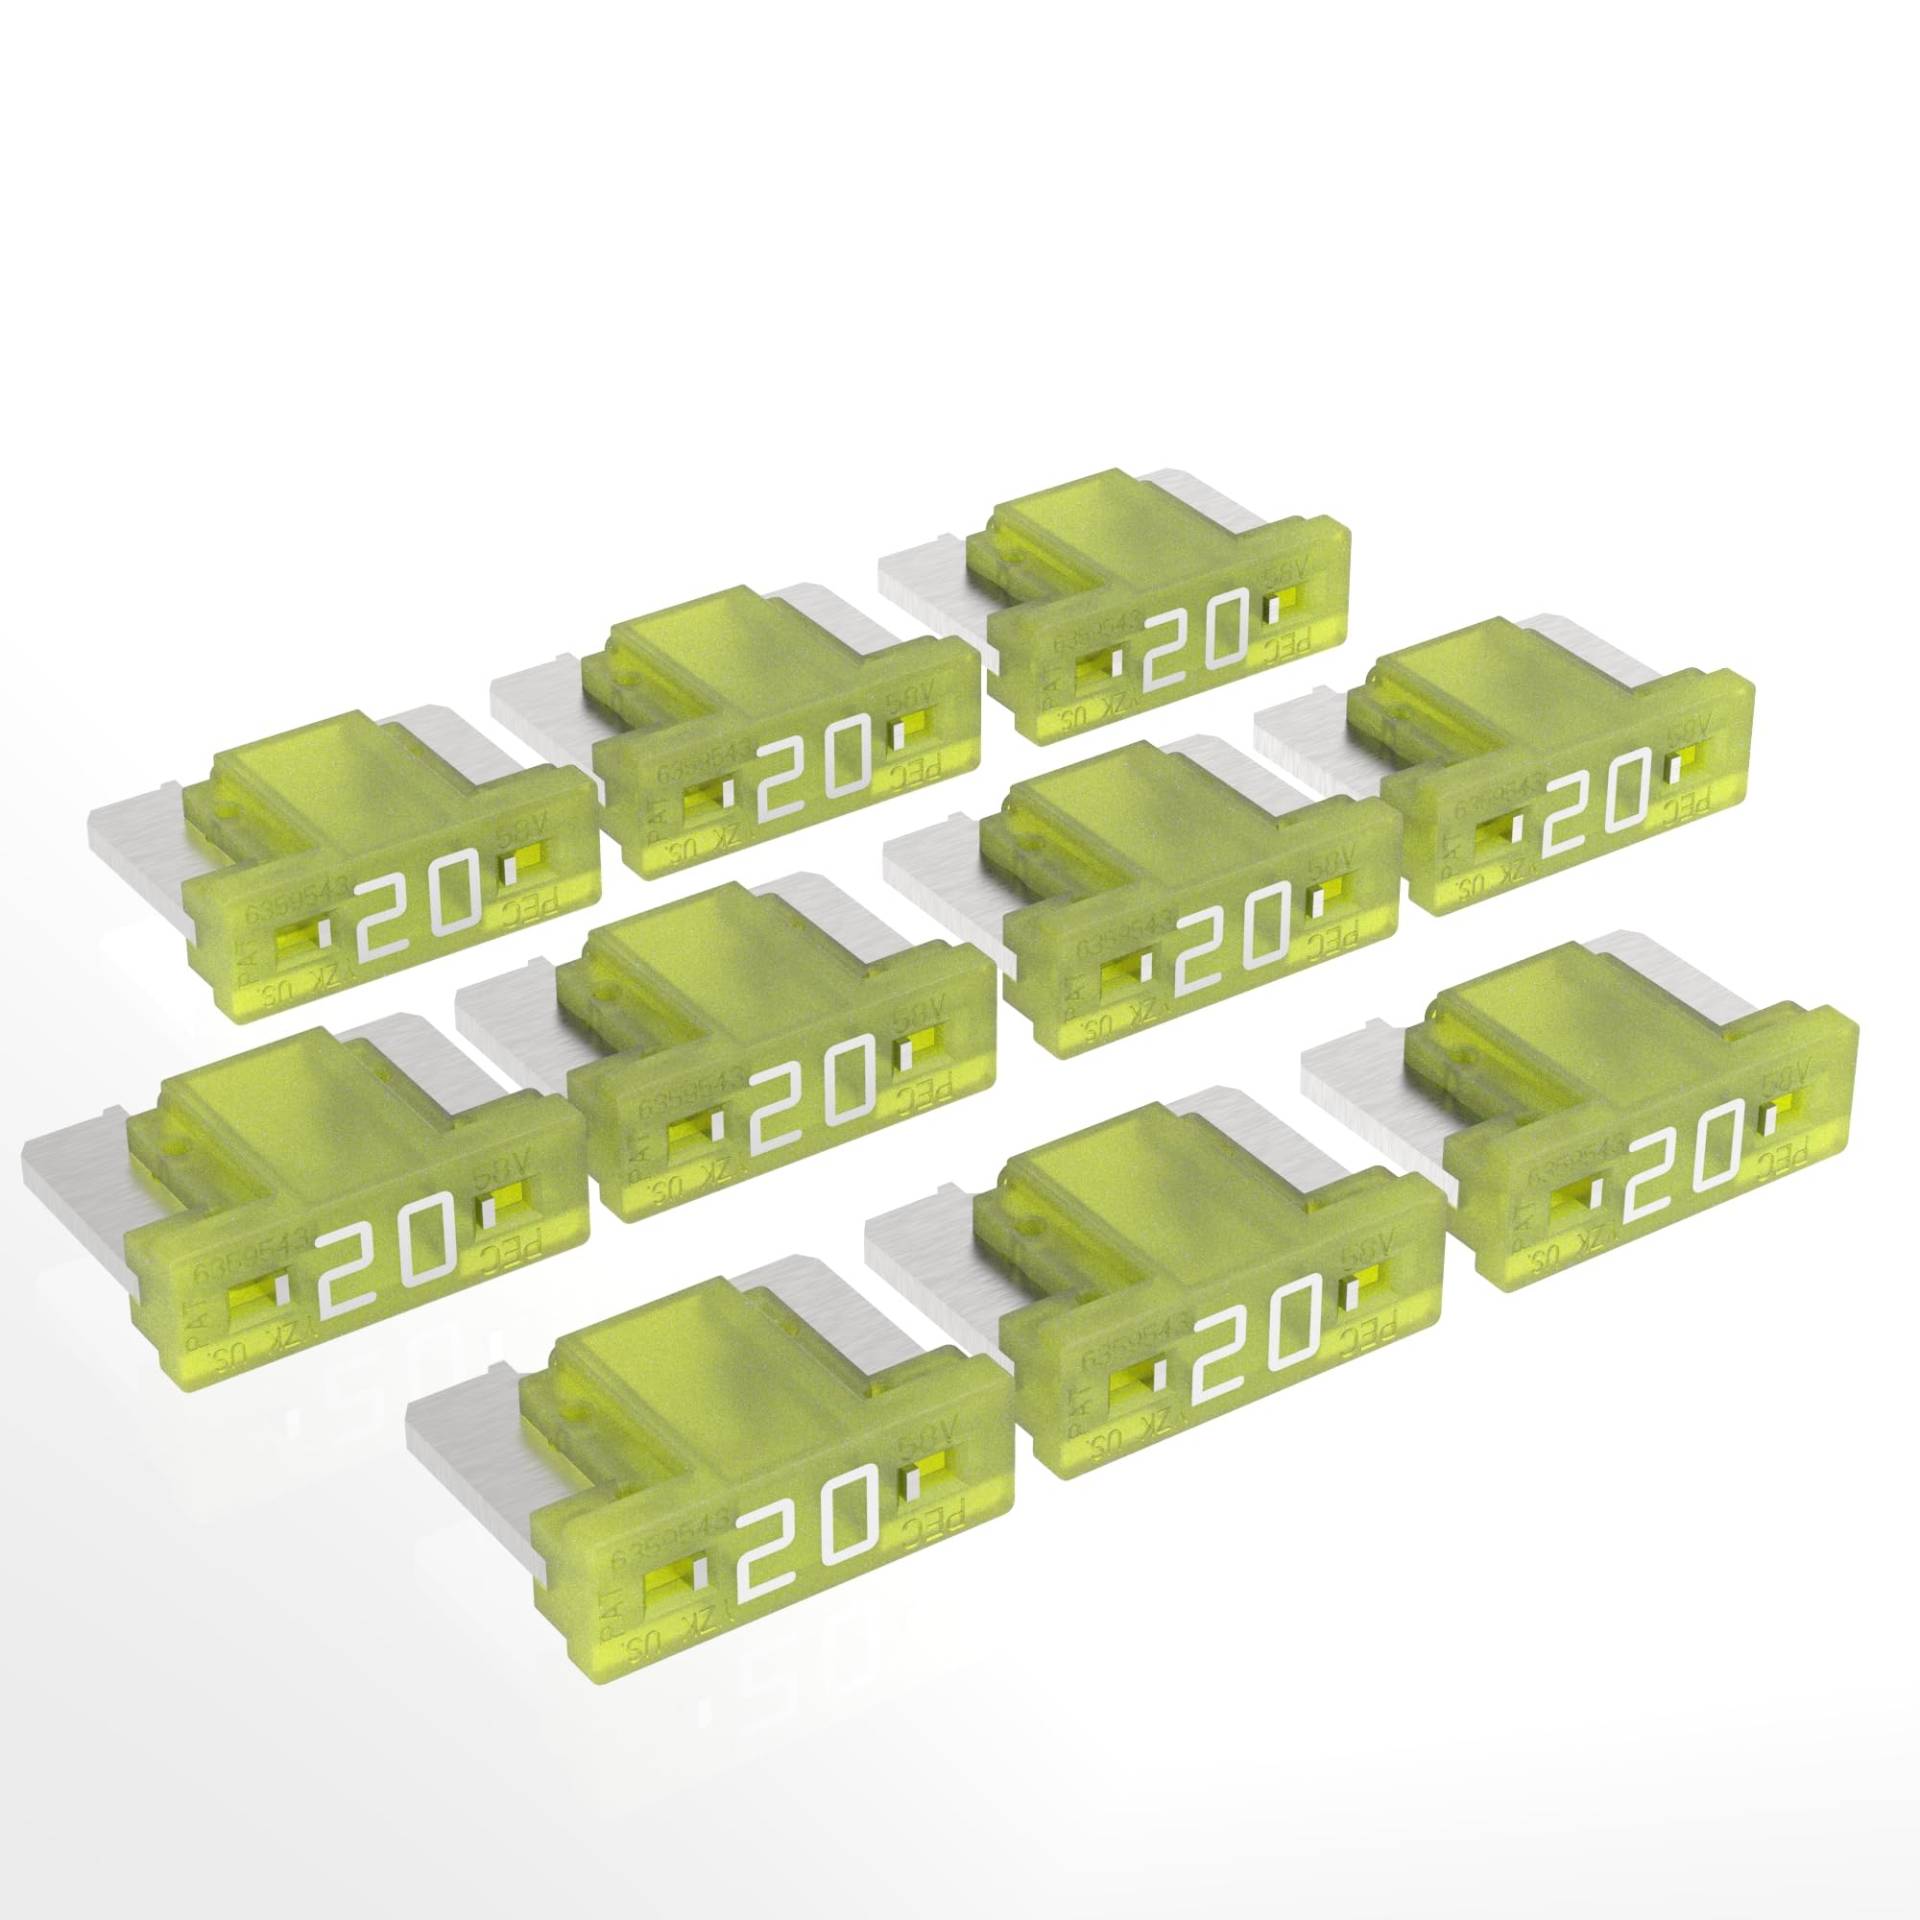 AUPROTEC Mini LP Kfz Sicherungen Flachstecksicherungen 2A - 30A Auswahl: 20A Ampere gelb, 10 Stück von AUPROTEC